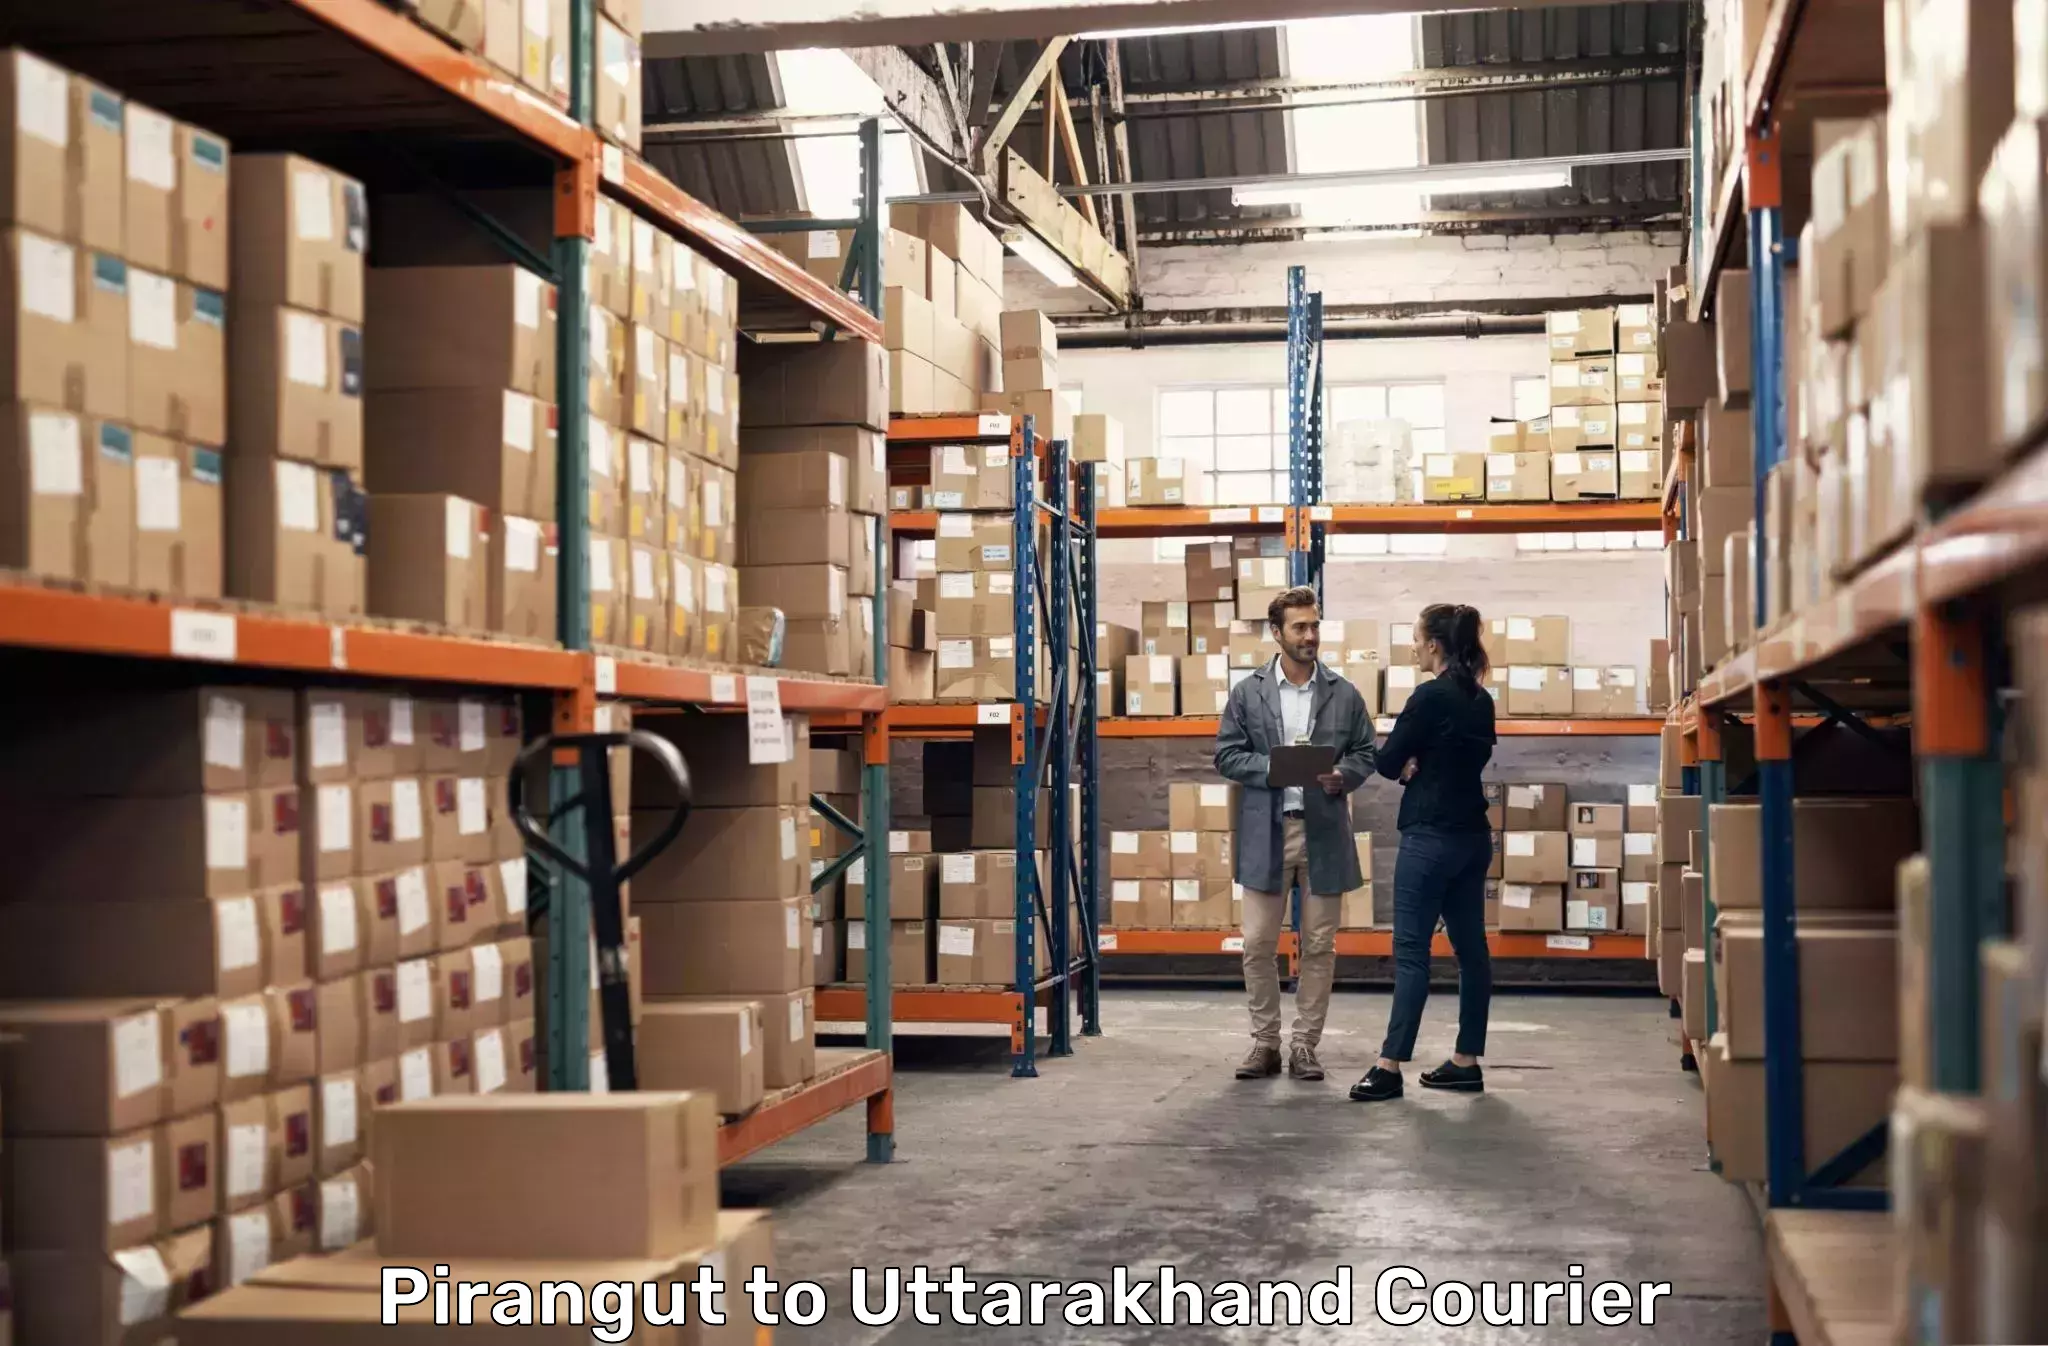 Express courier facilities Pirangut to Uttarakhand